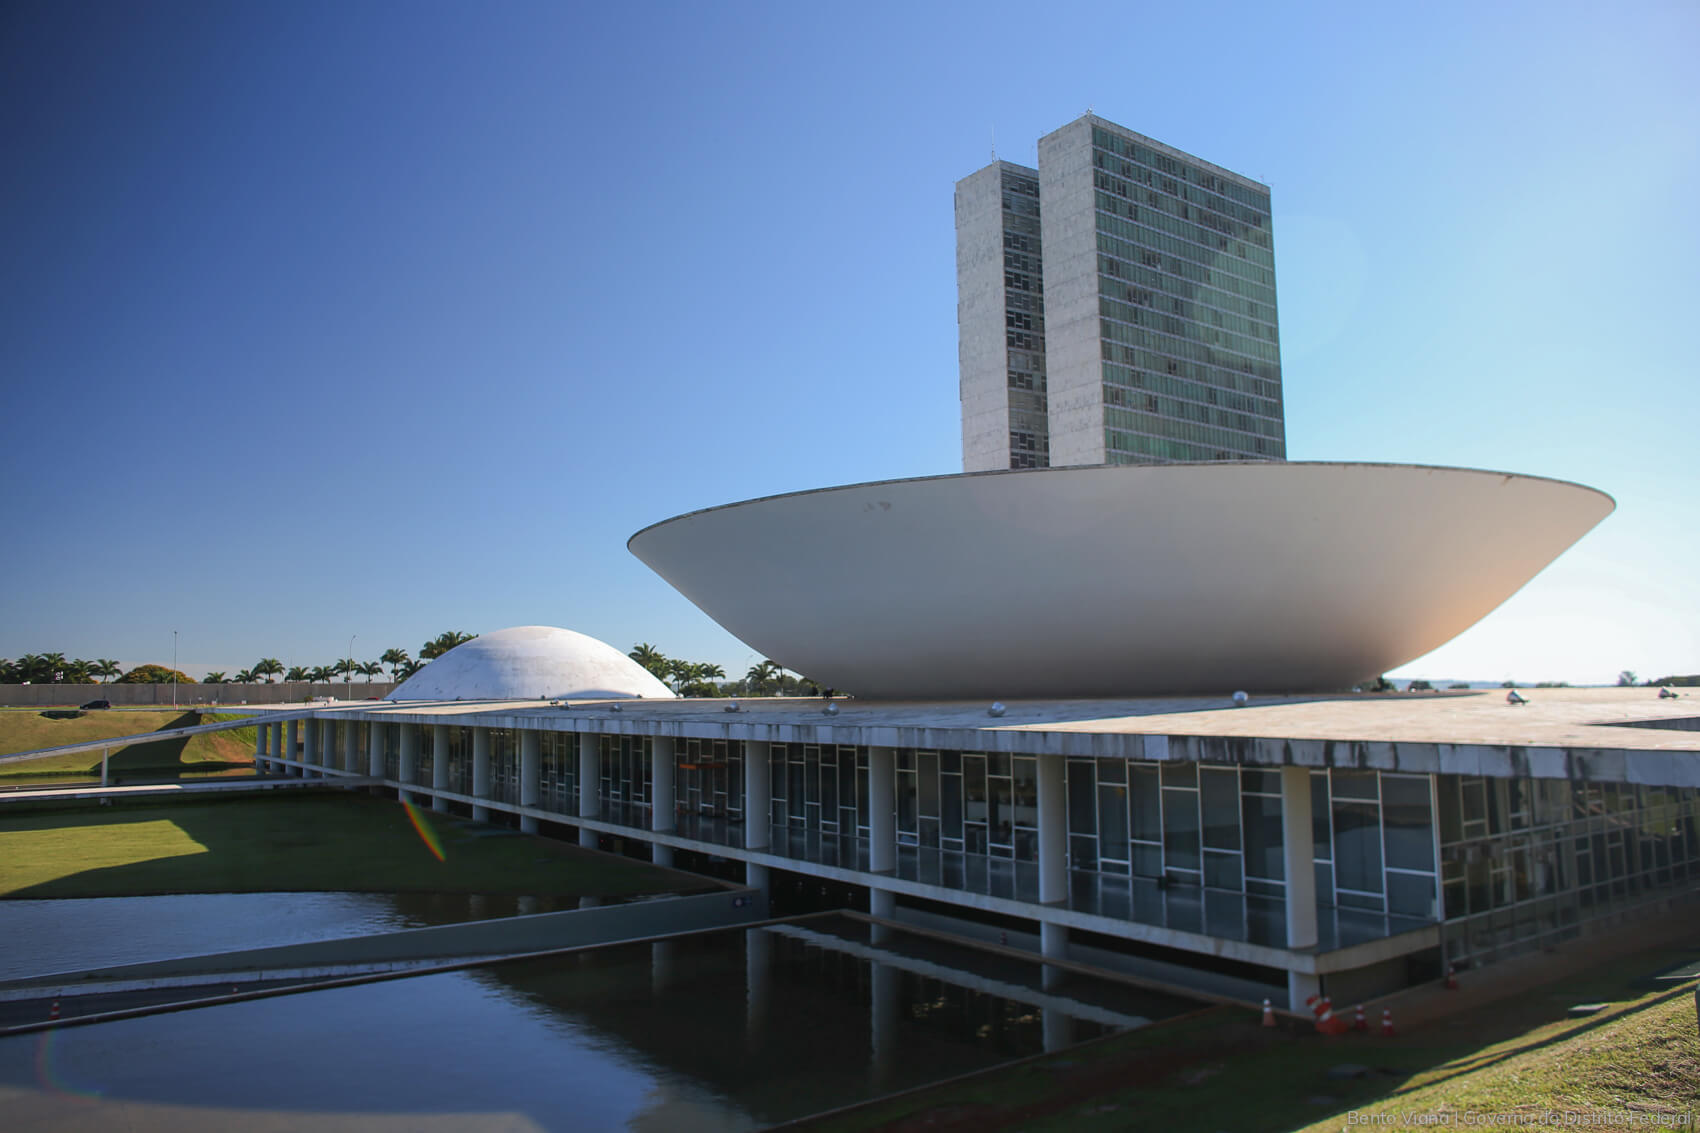 brasilia architecture tour